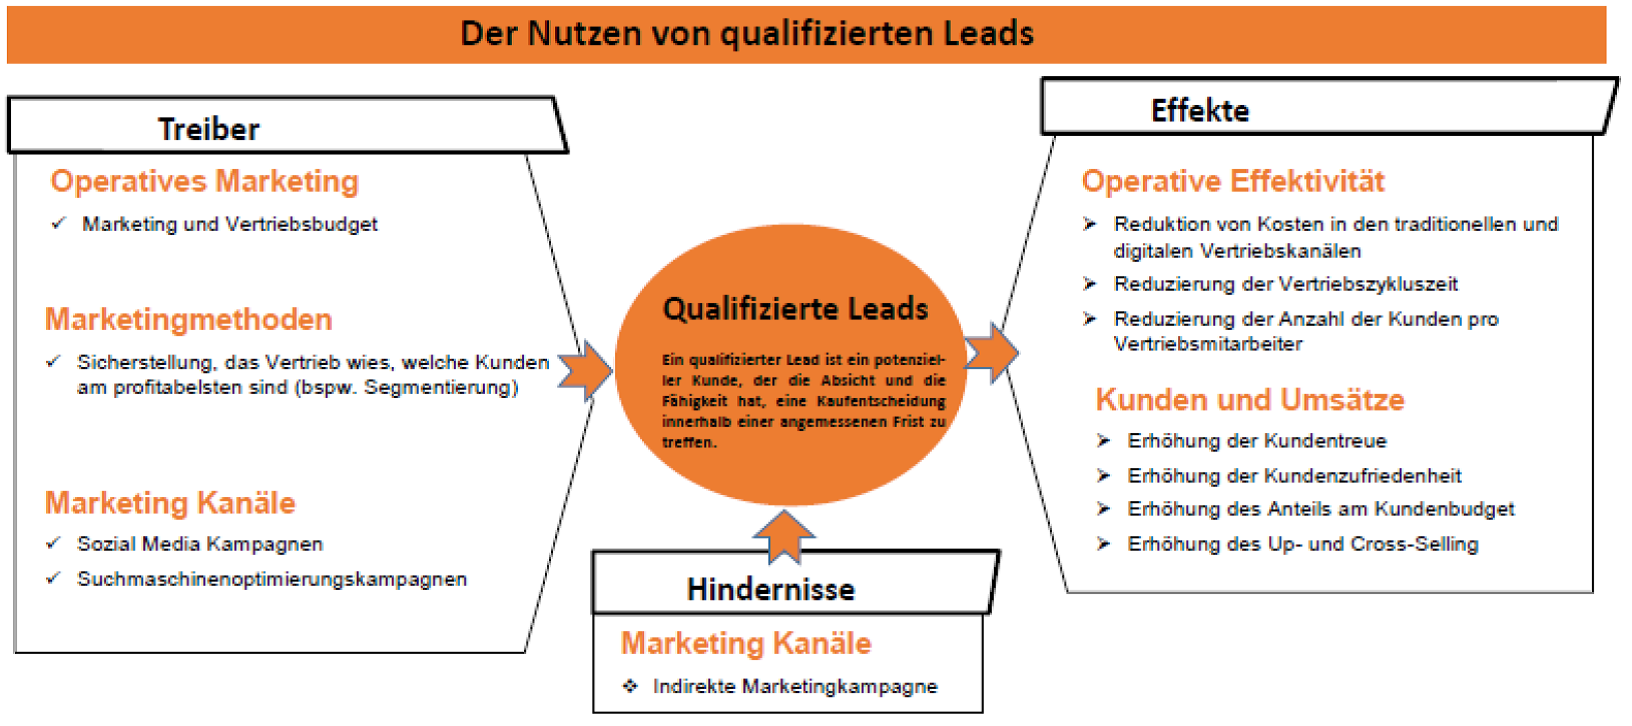 BMC_Nutzen-qualifizierter-Leads